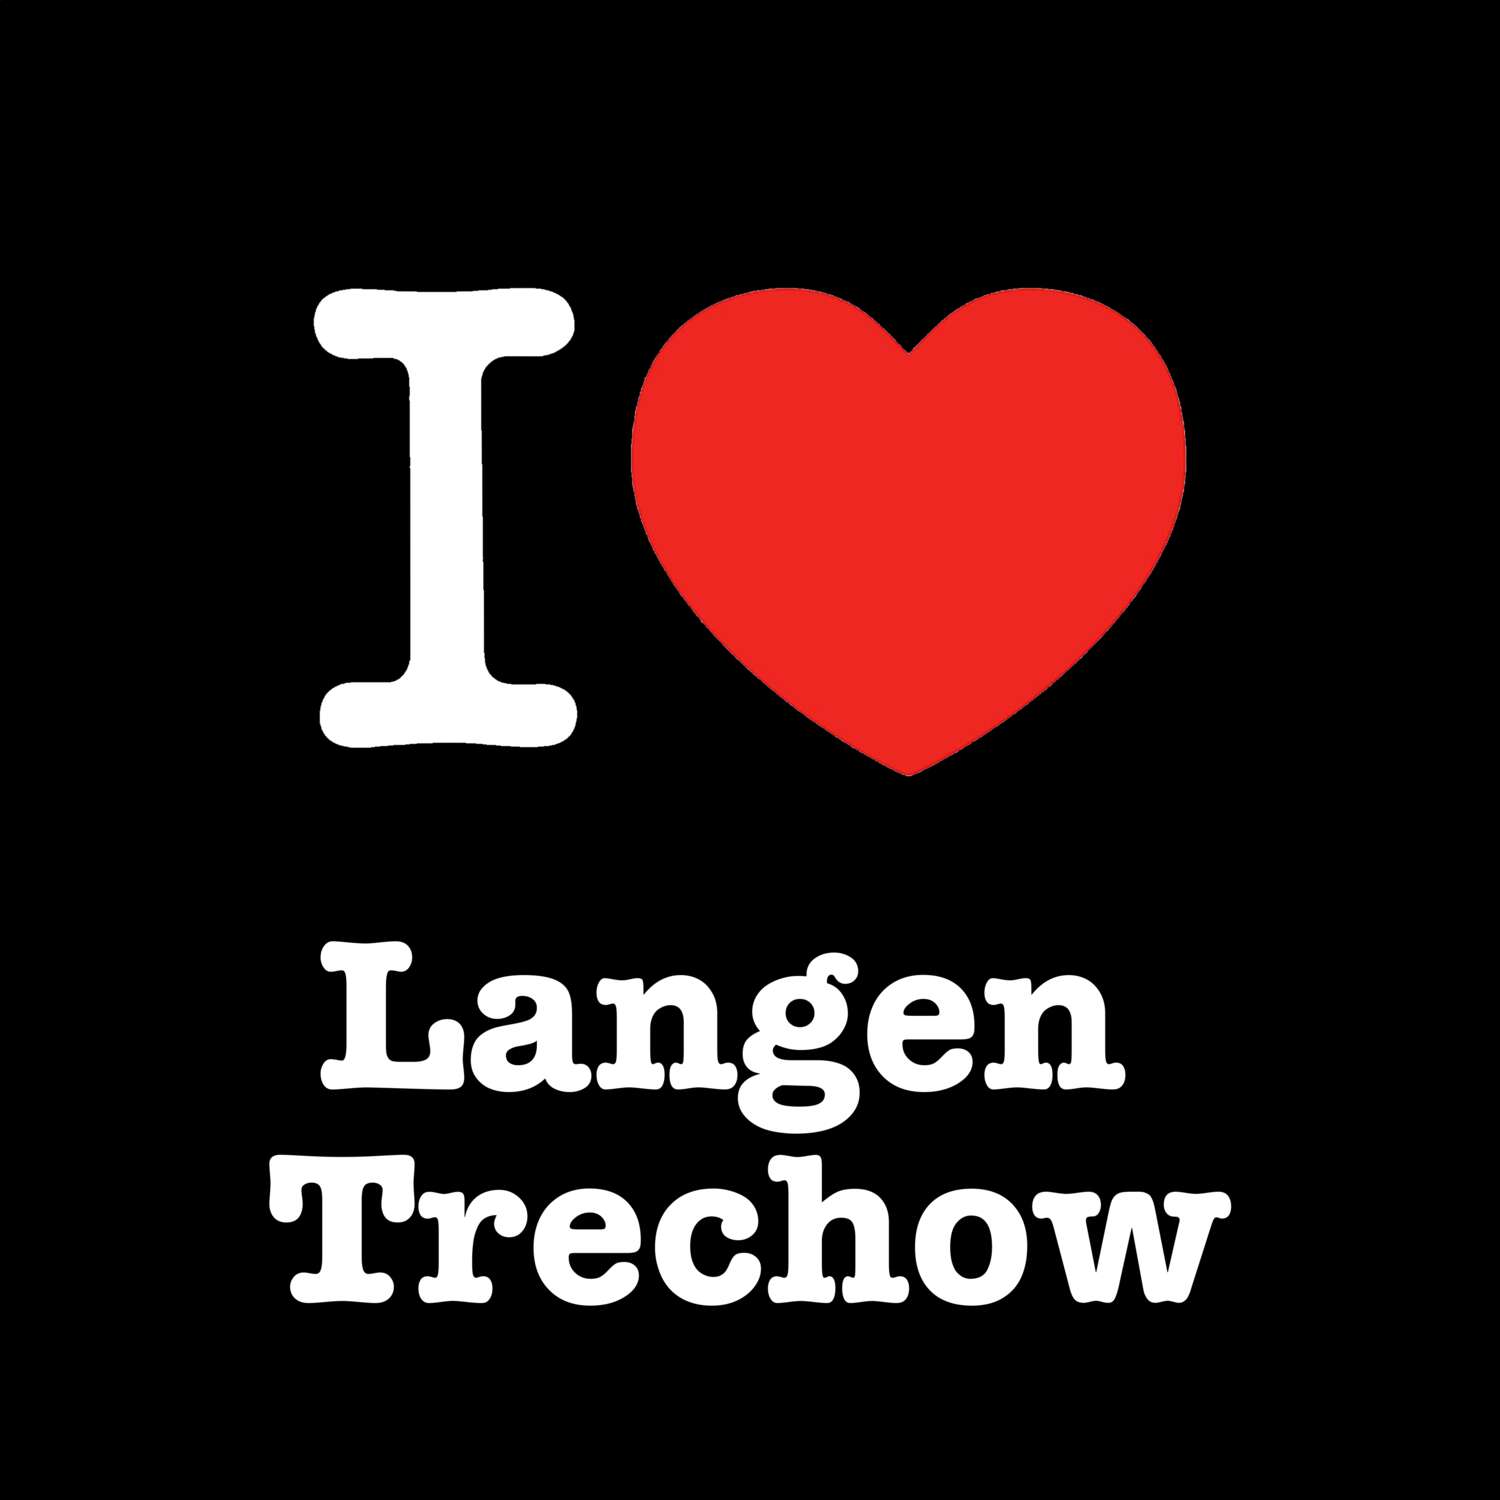 Langen Trechow T-Shirt »I love«